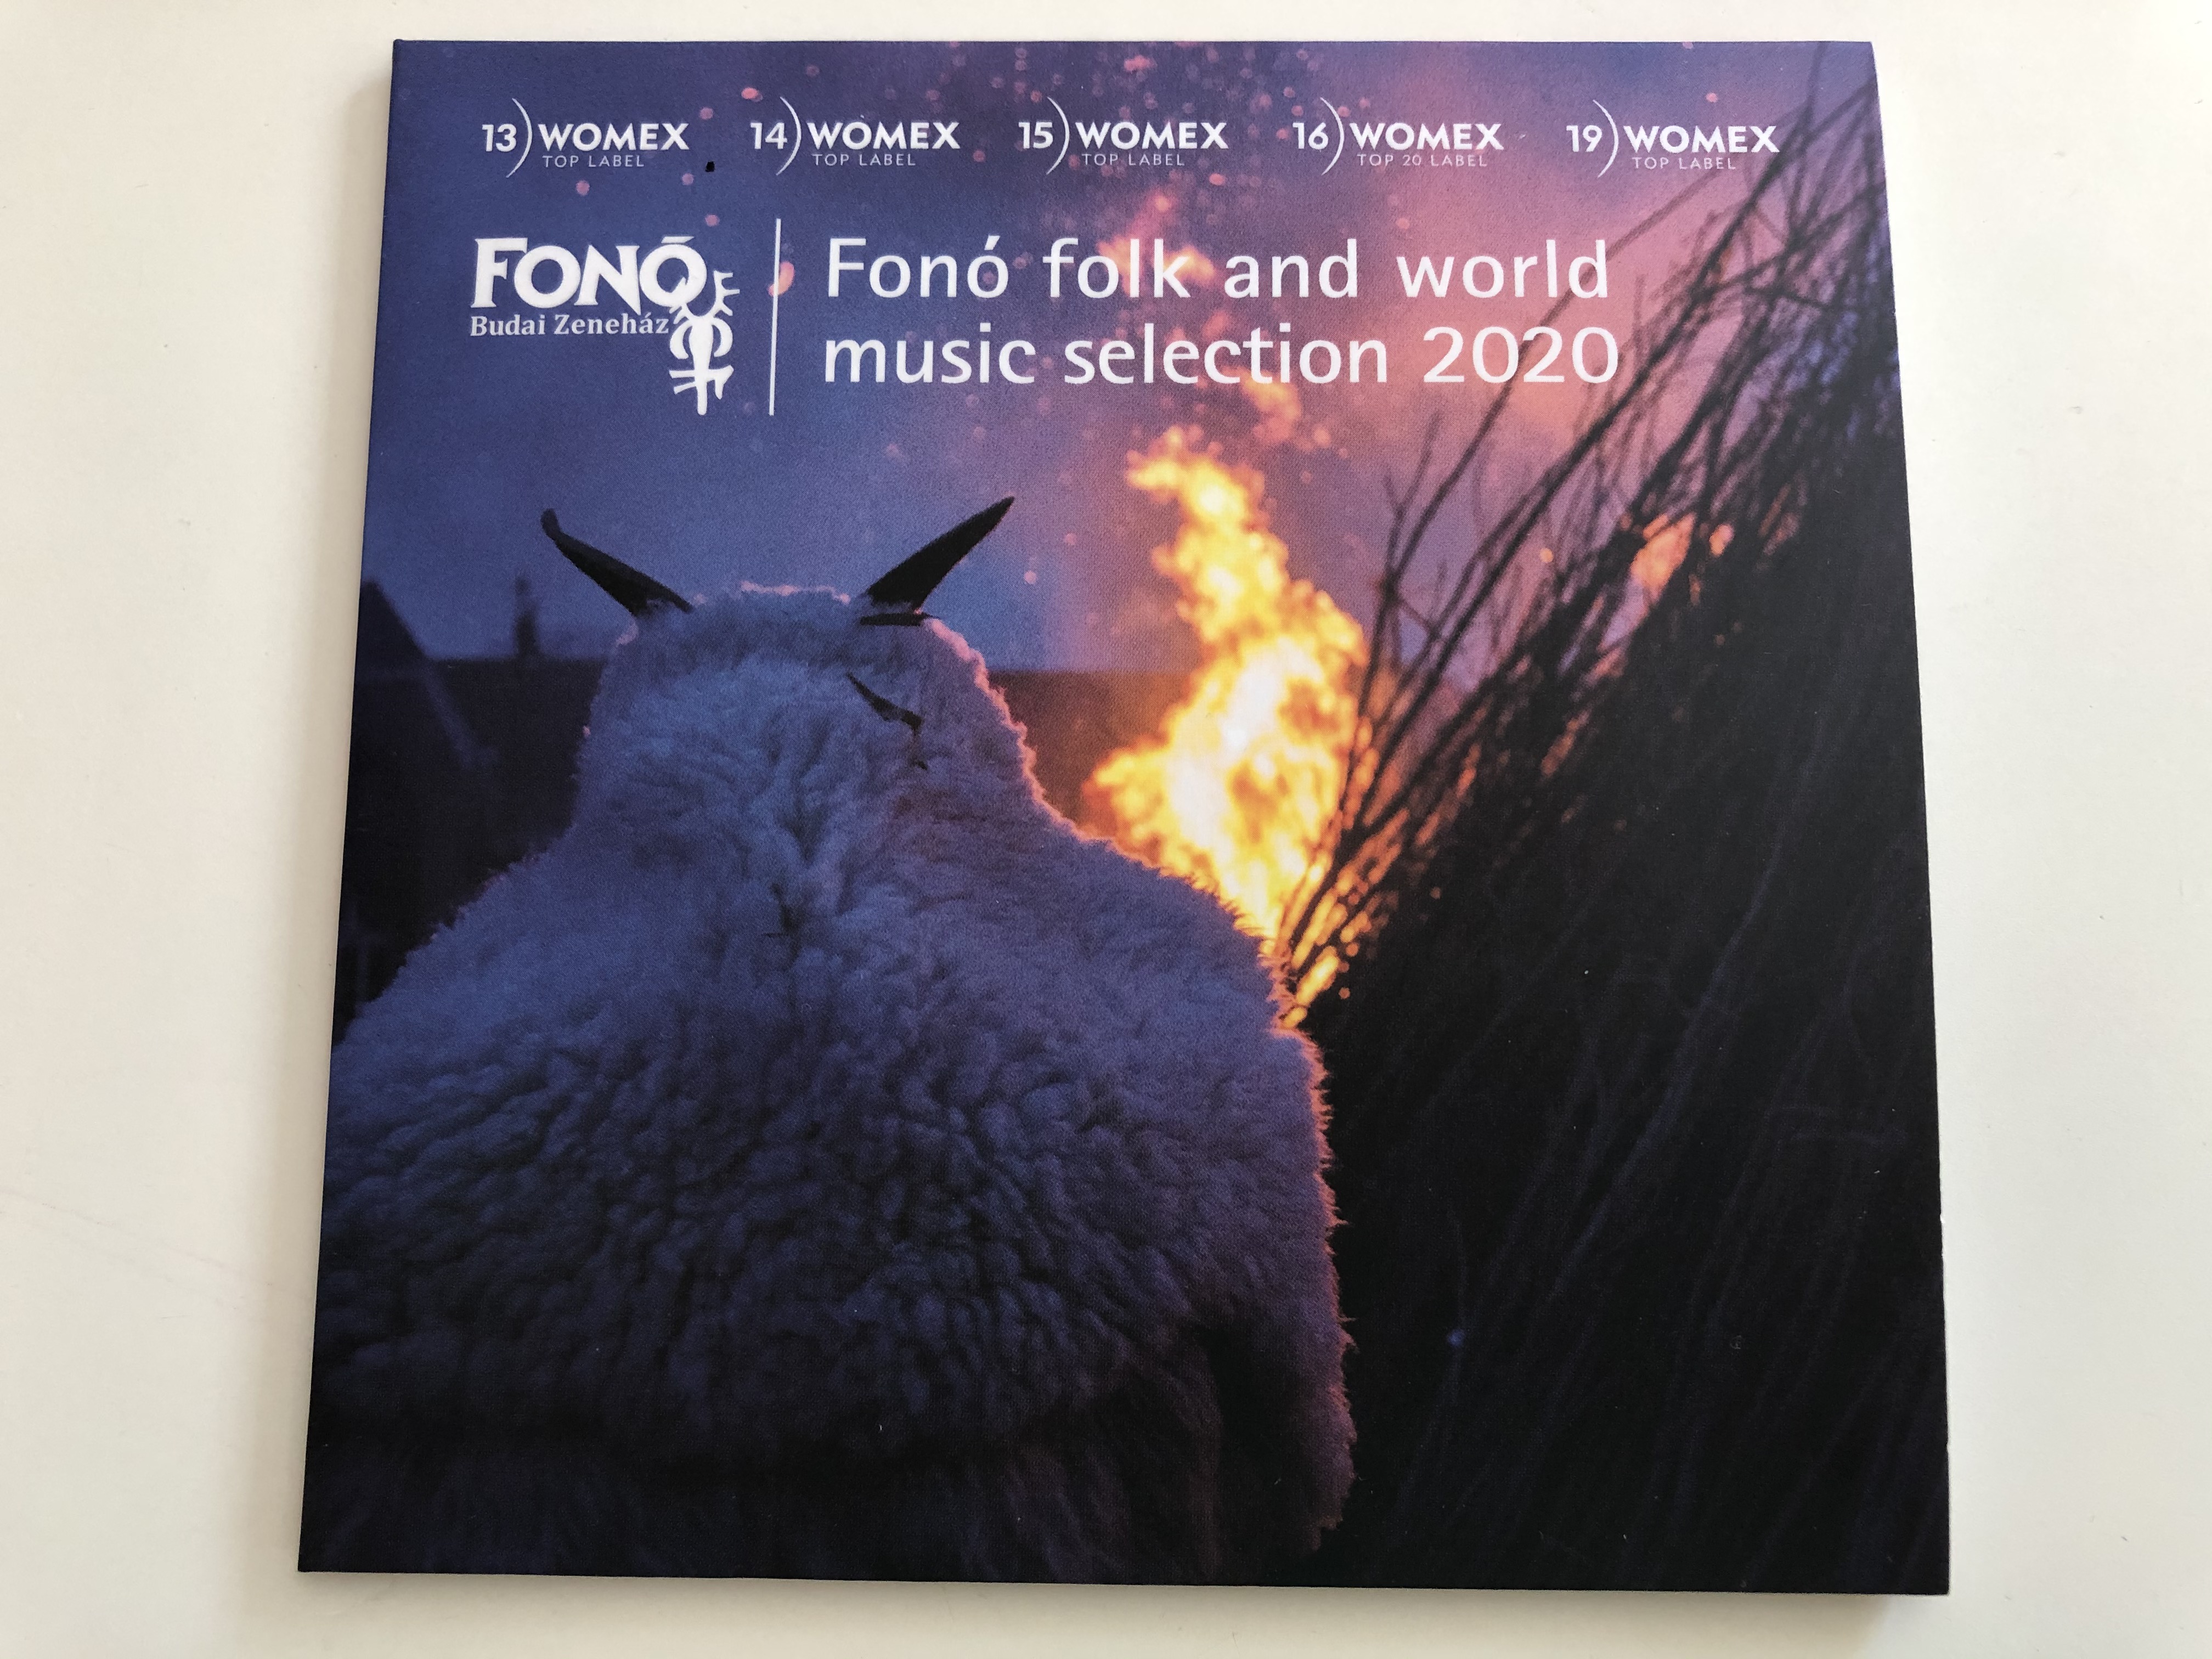 fon-folk-and-world-music-selection-2020-fon-budai-zeneh-z-audio-cd-2020-fa-448-2-1-.jpg